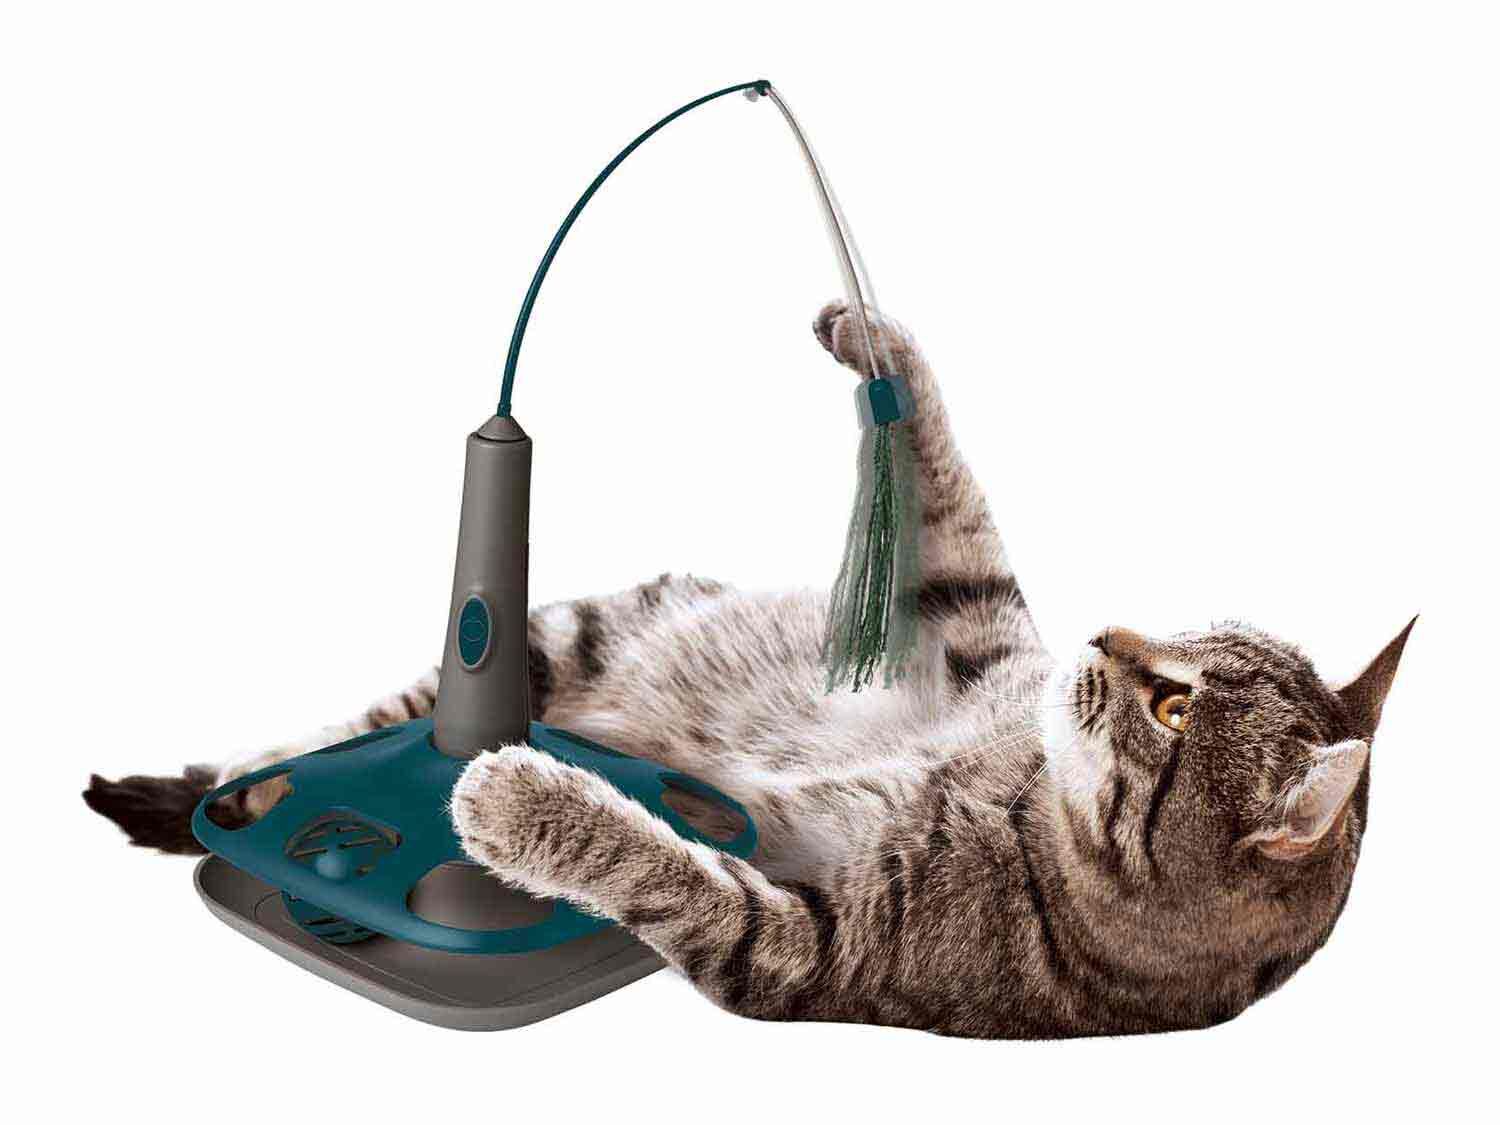 buscar planes Feudo El juguete perfecto para gatos está en Lidl - Economía Digital